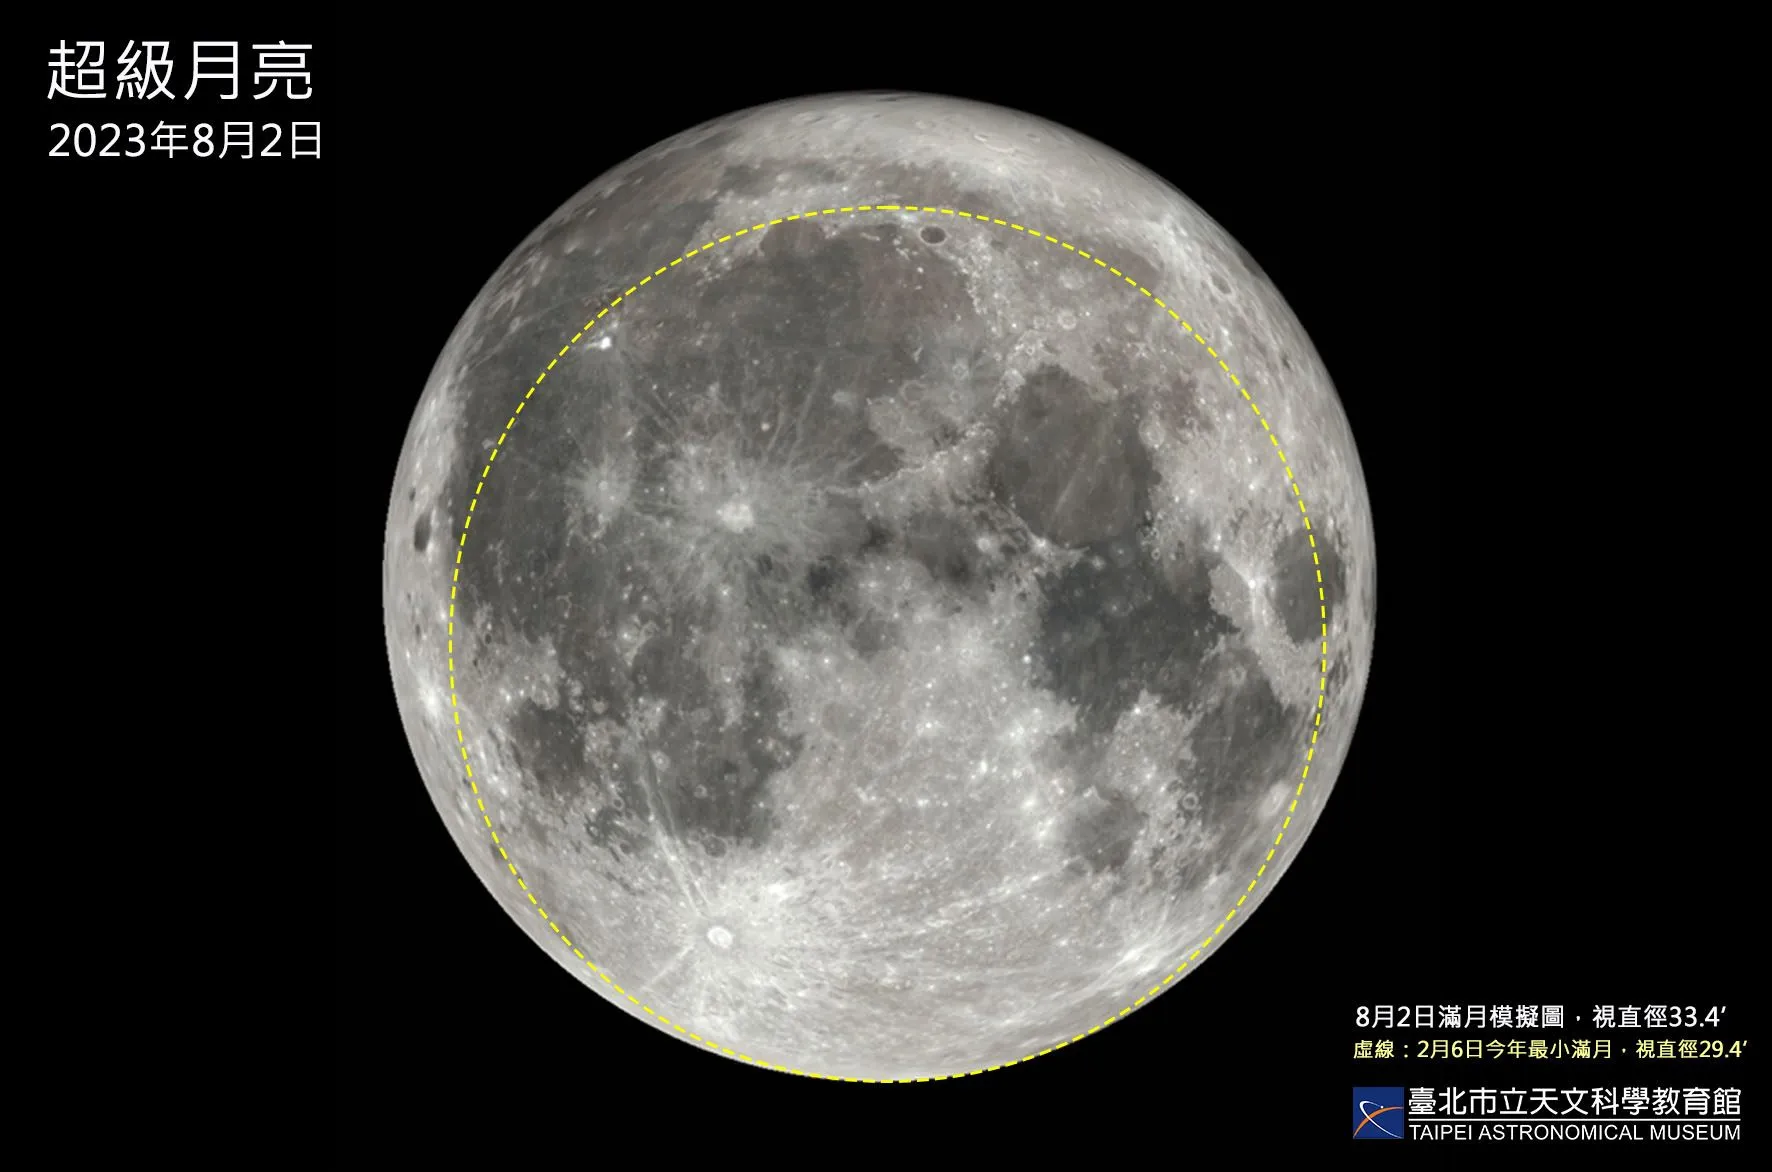 2023年8月2日超级月亮与2月6日最小满月的比较图，两者面积增加28.8%，月球将会更大更亮。